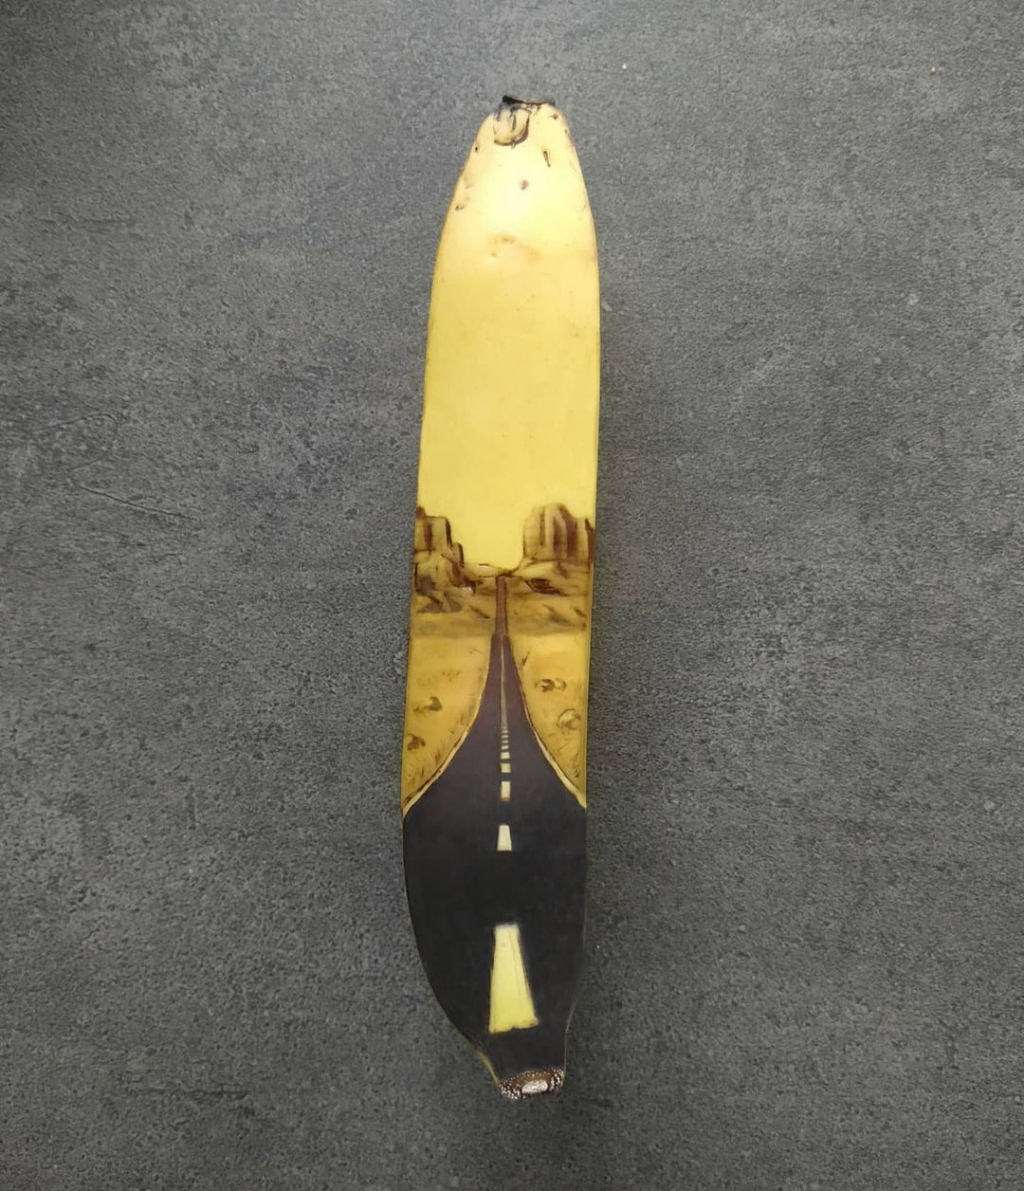 Arte incrível com banana feita partir da oxidação da casca 14